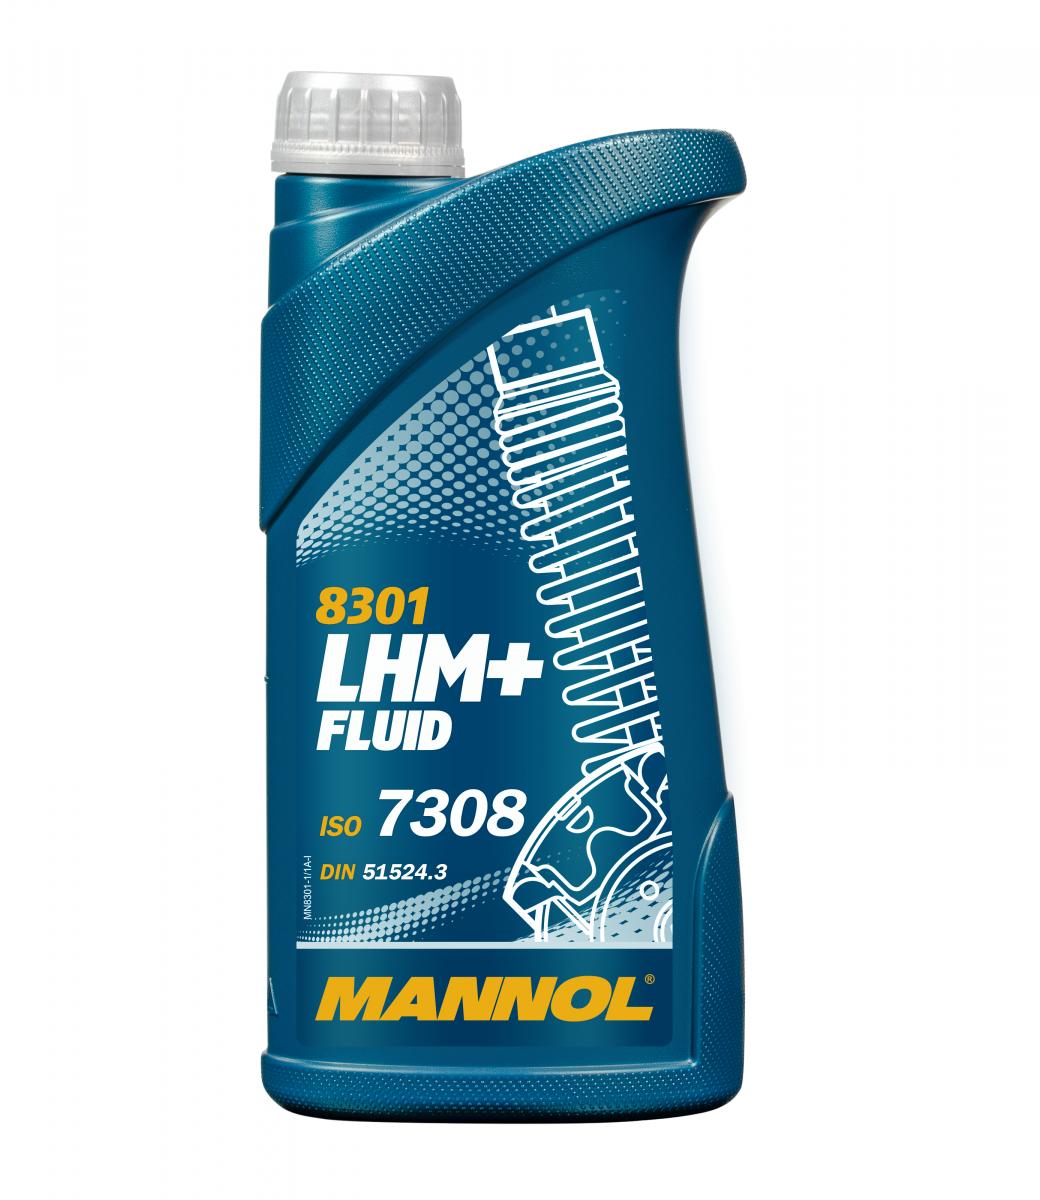 MN LHM Plus Fluid